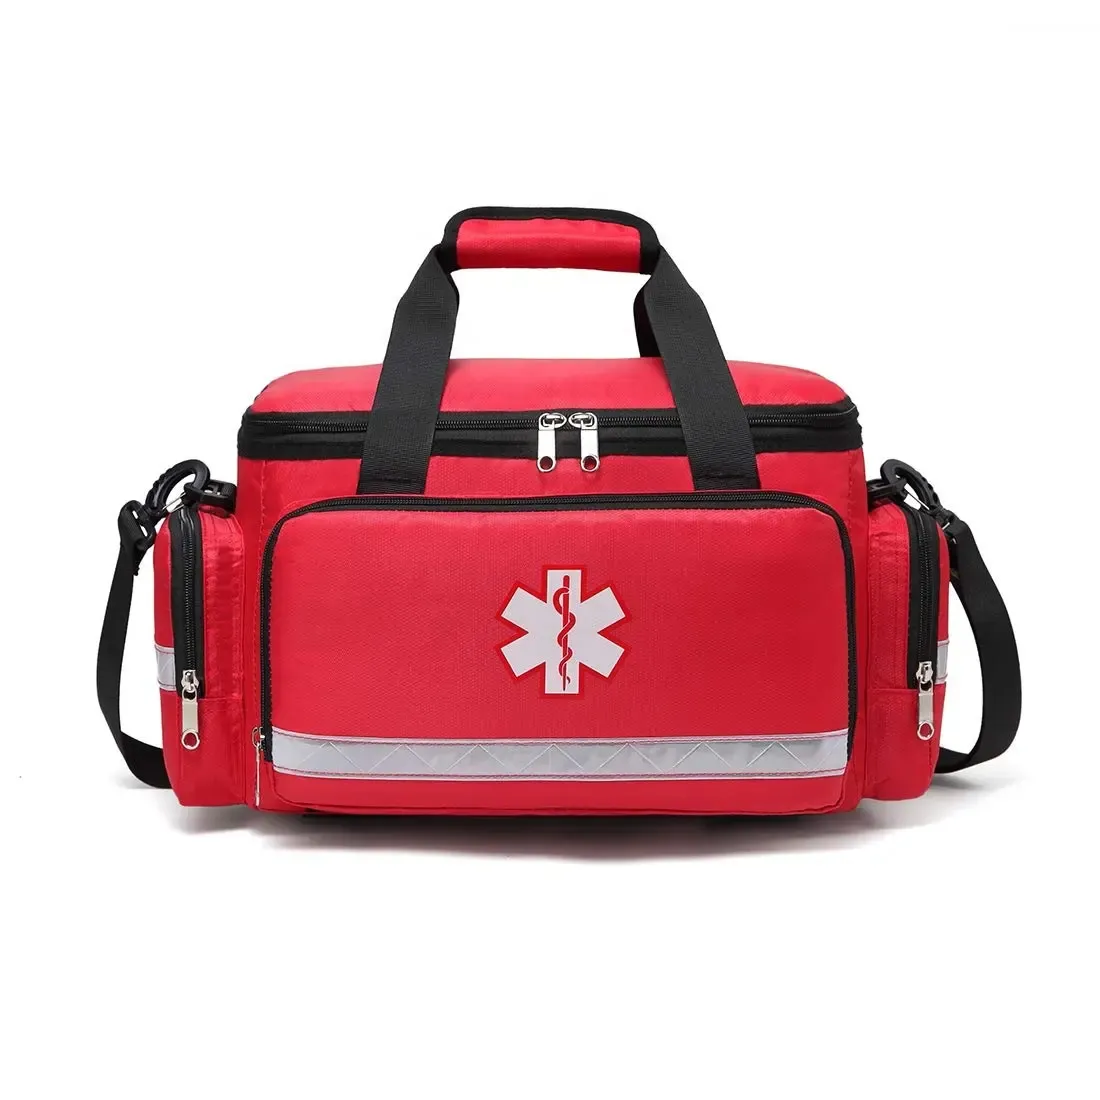 Nouvelle trousse de premiers soins Ifak Trauma paramédic sac de saut EMT EMS infirmière Medic Ambulance sac à dos trousse médicale d'urgence sacs